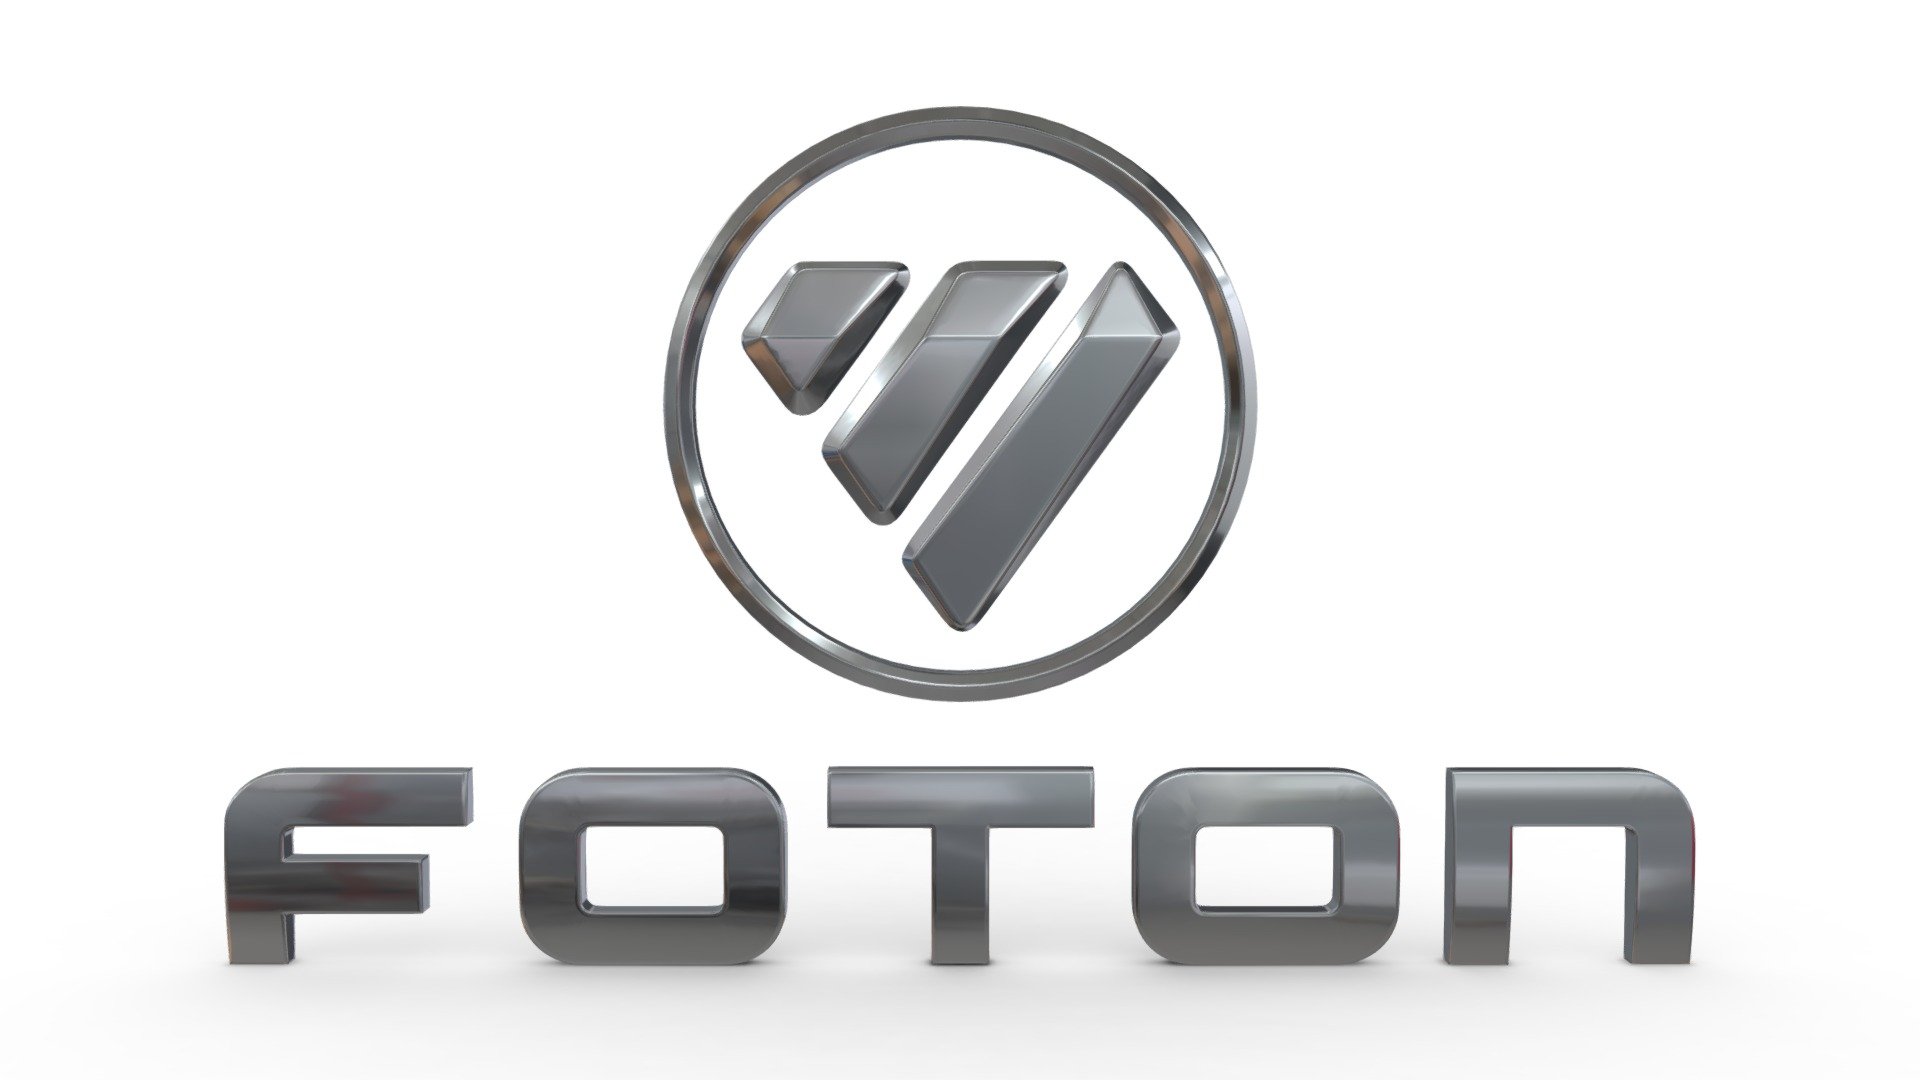 foton logo